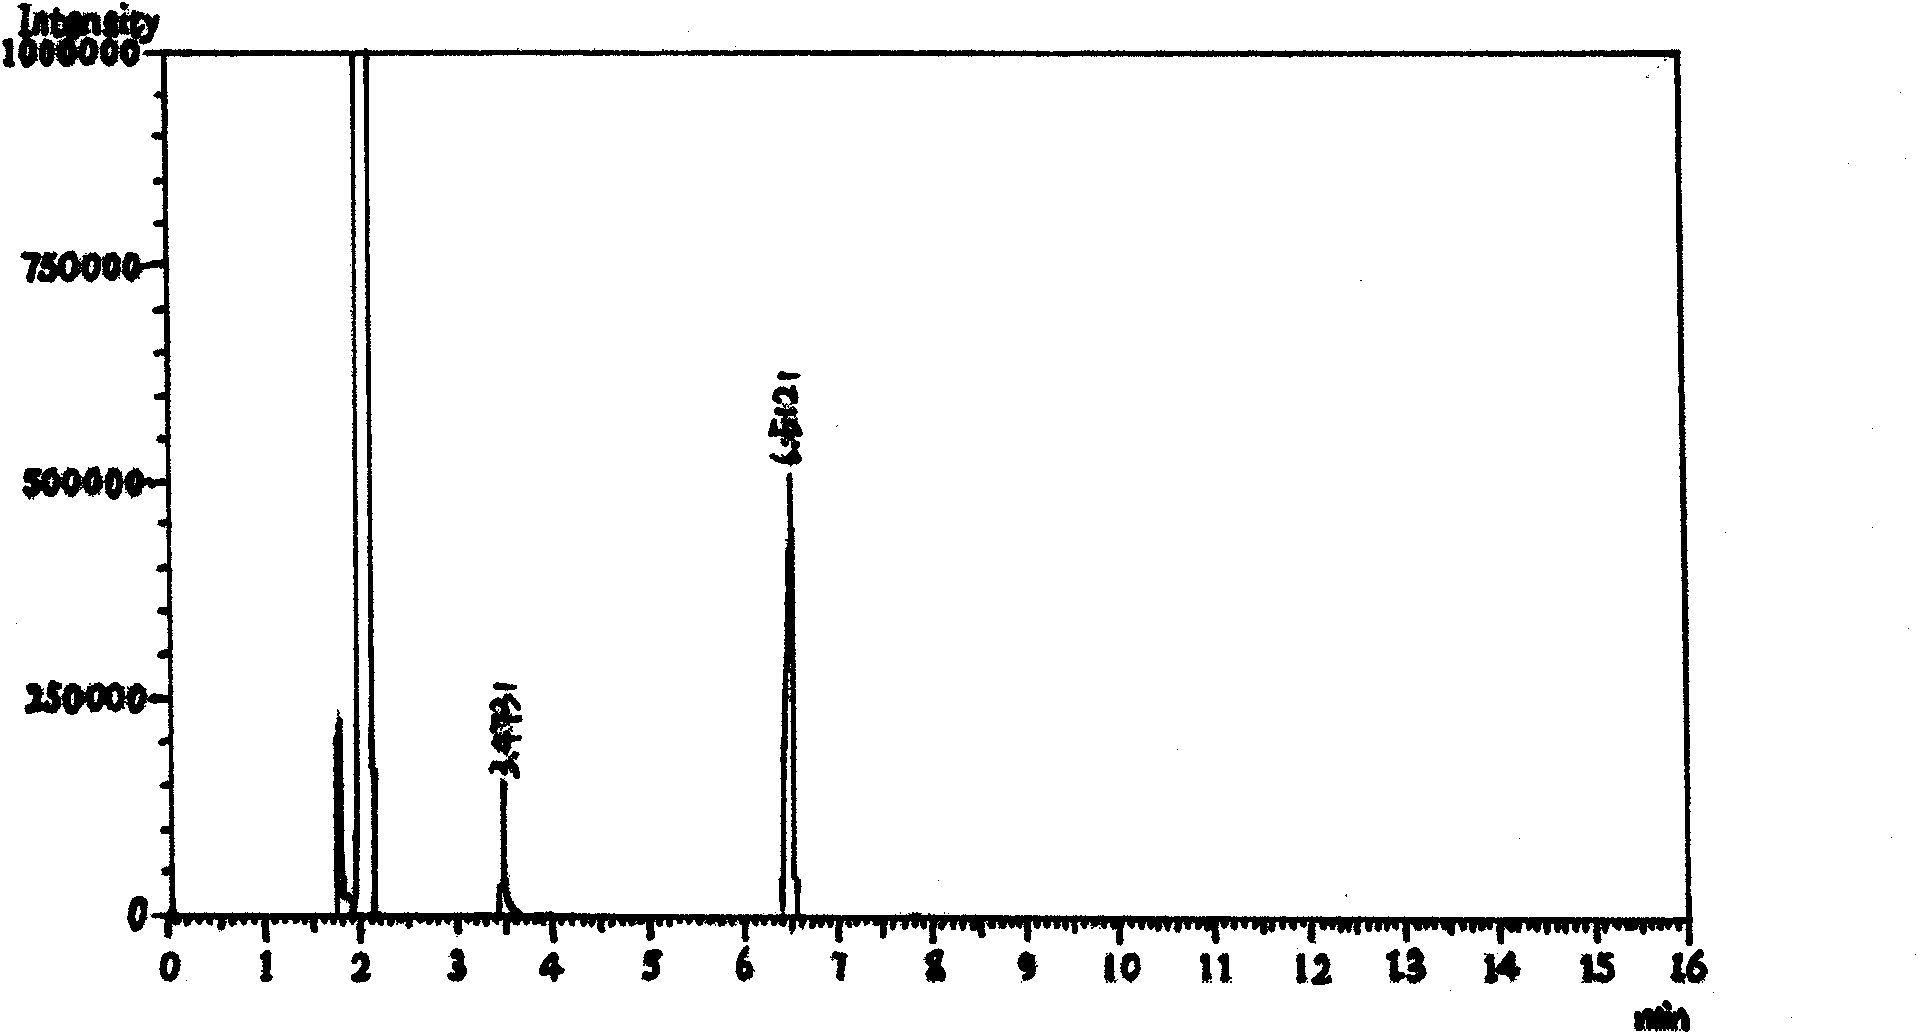 Synthesis method of 1-methyl-3-trifluoromethyl pyrazol